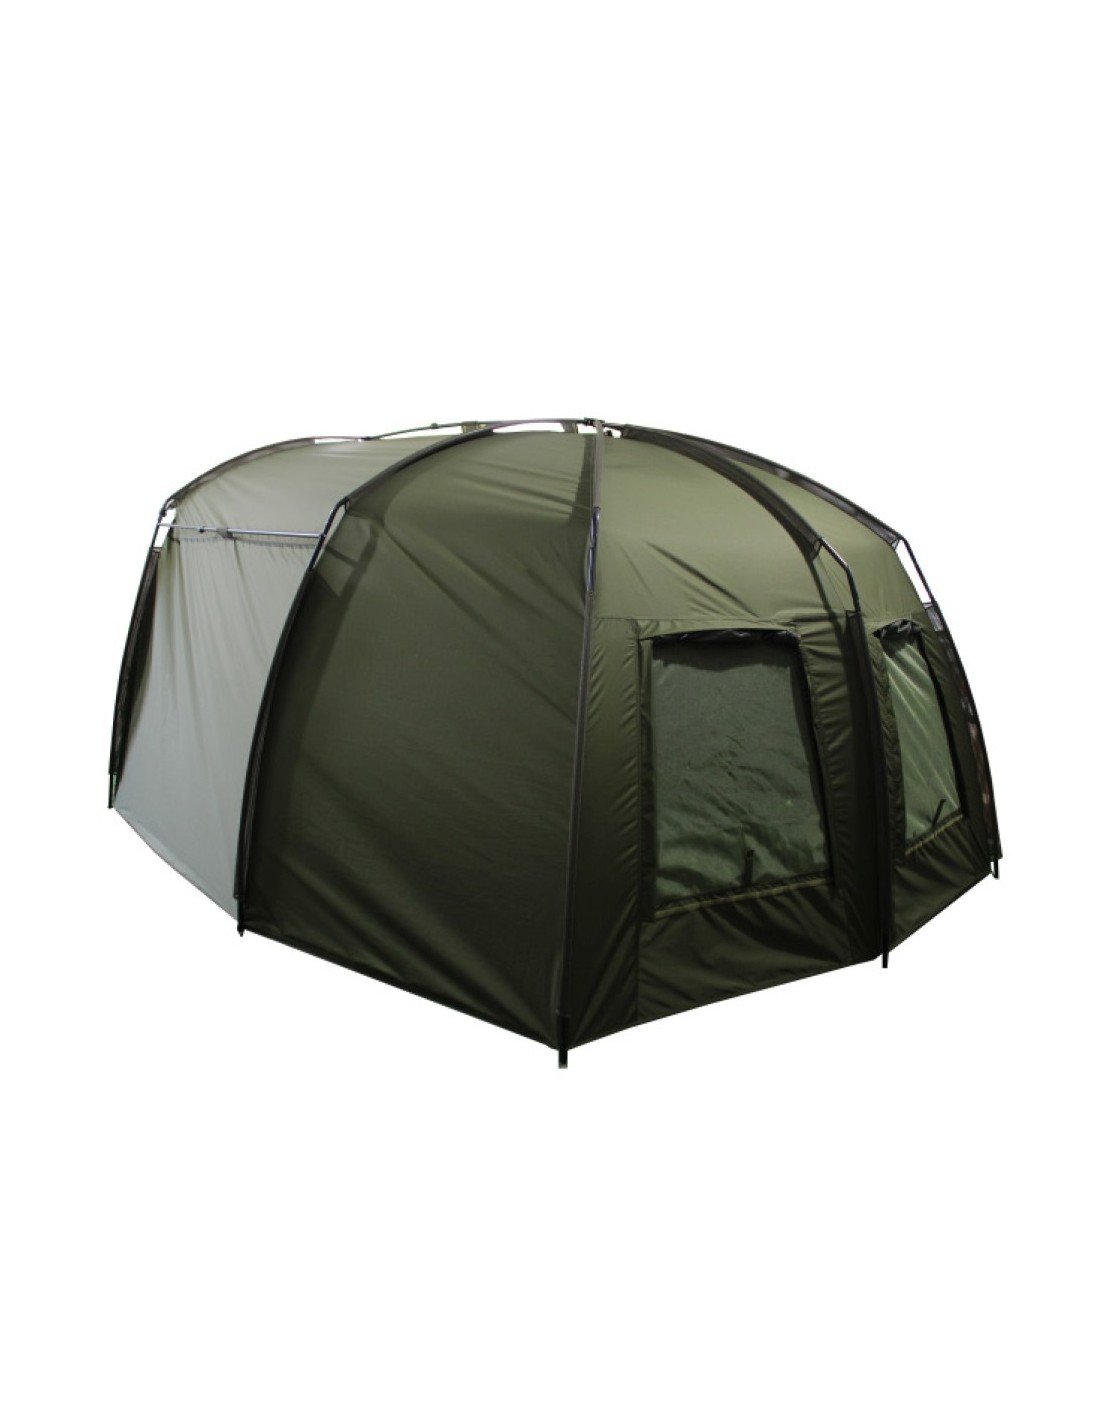 Sonik AXS Bivvy 2 Man палатка